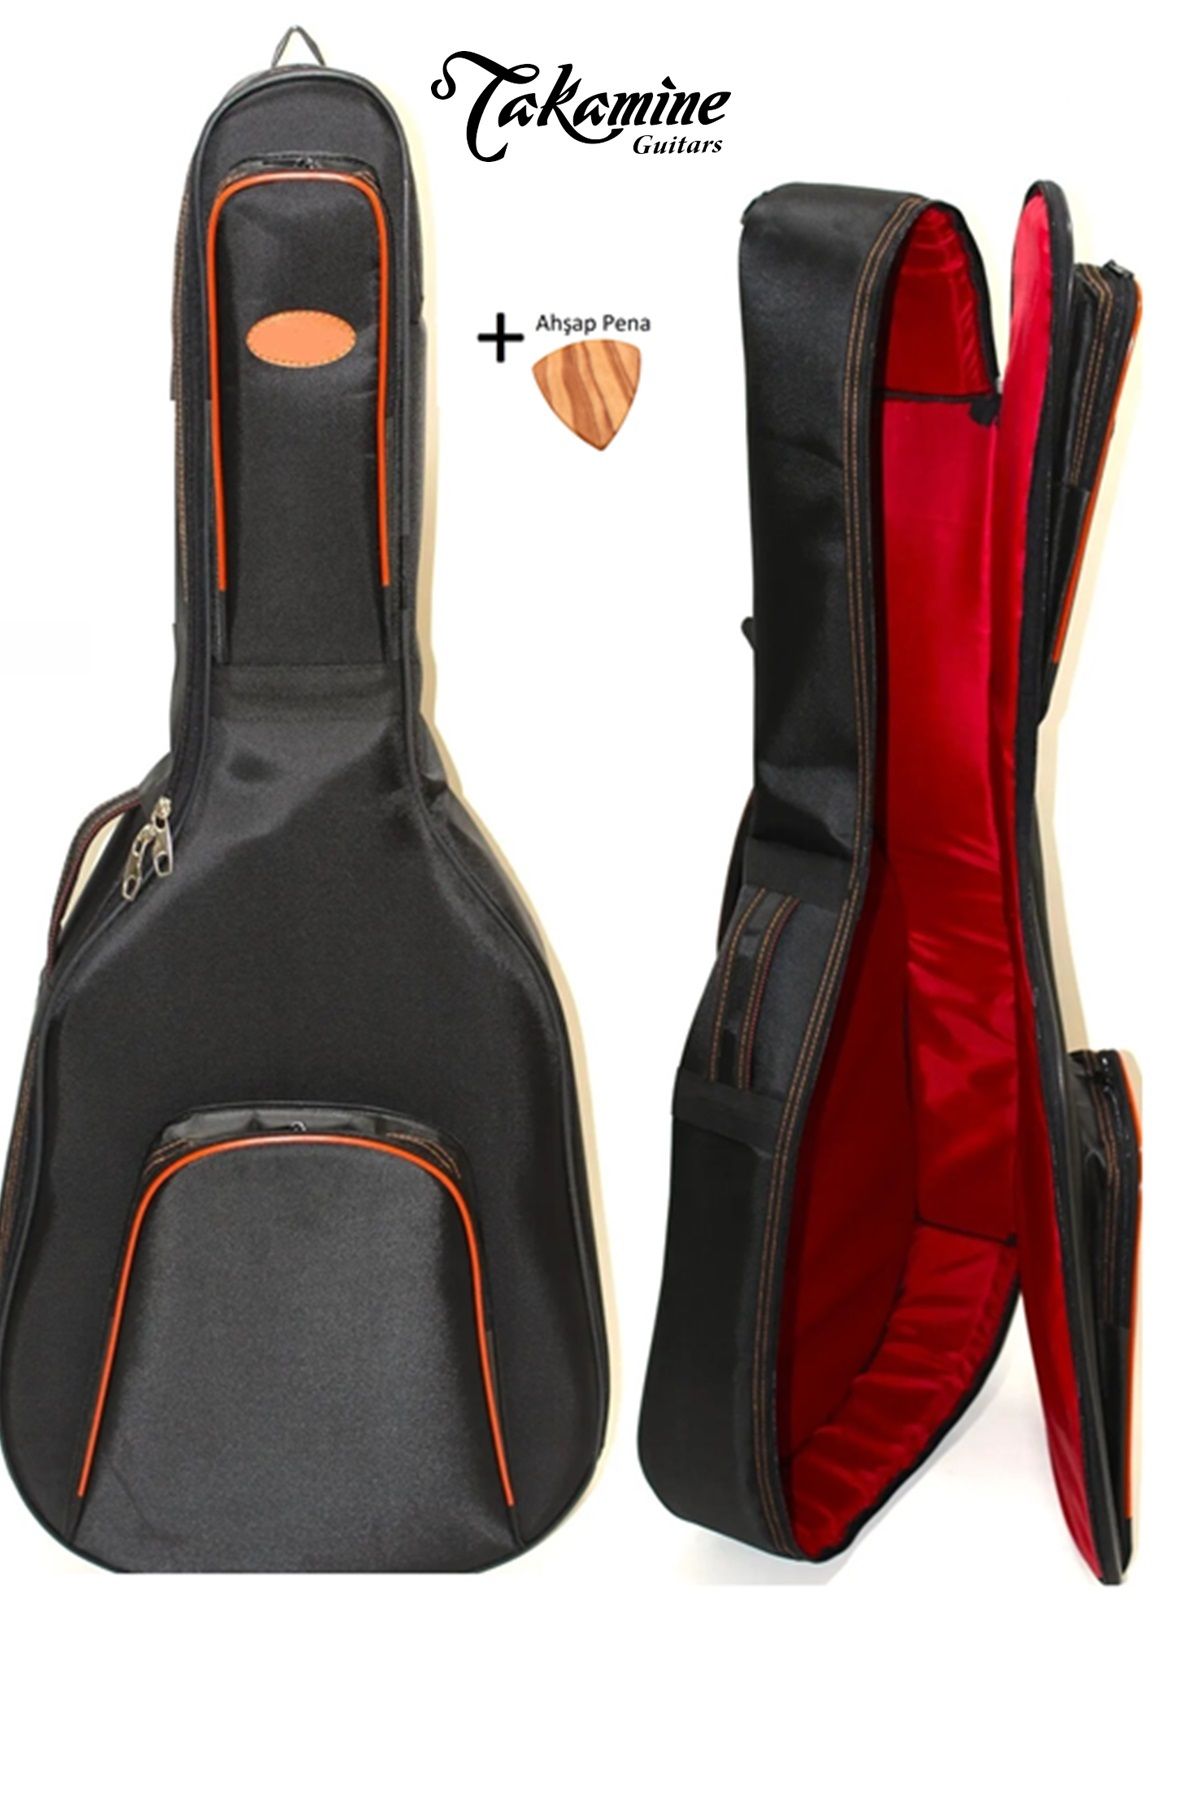 Takamine Ultra Yüksek Koruma Takamine Klasik Gitar Kılıfı Taşıma Çantası Gigbag Soft Case